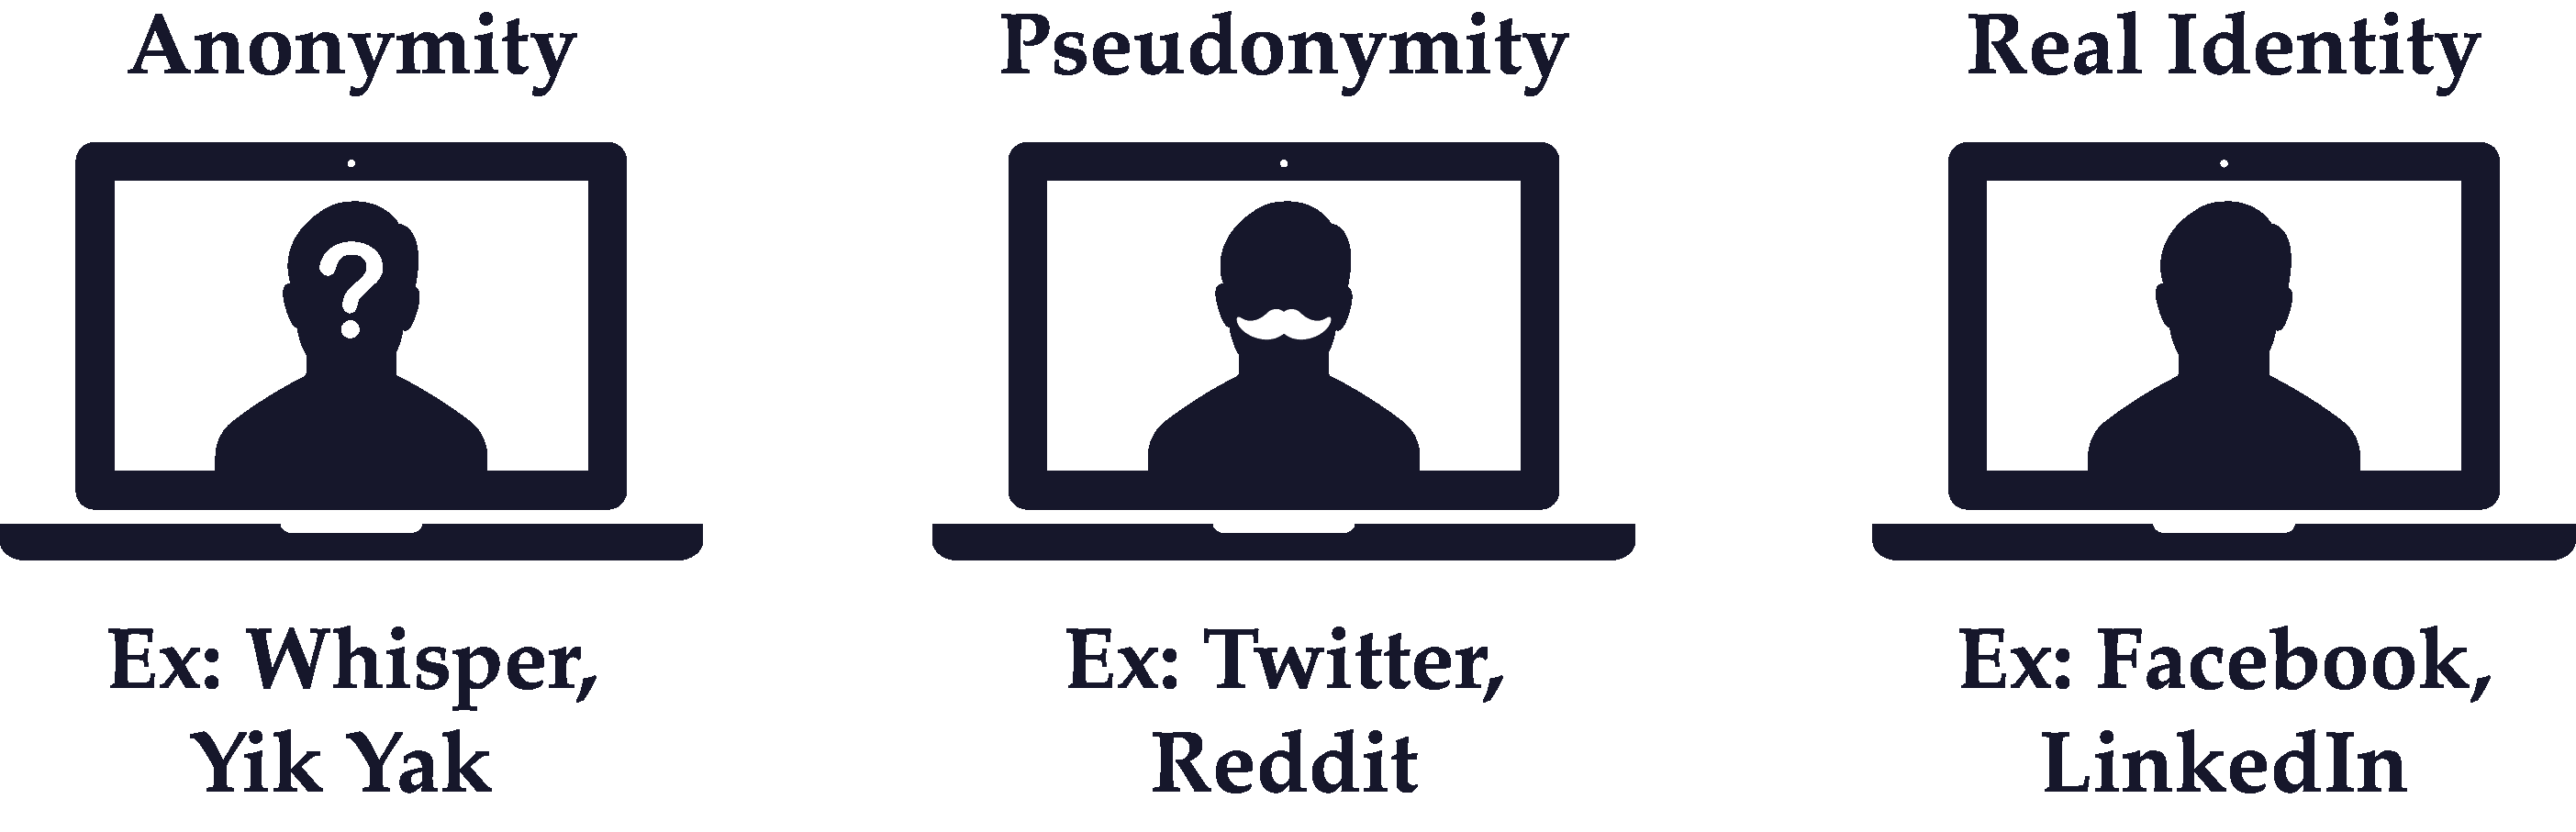 Real Identity vs Pseudonymity vs Anonymity